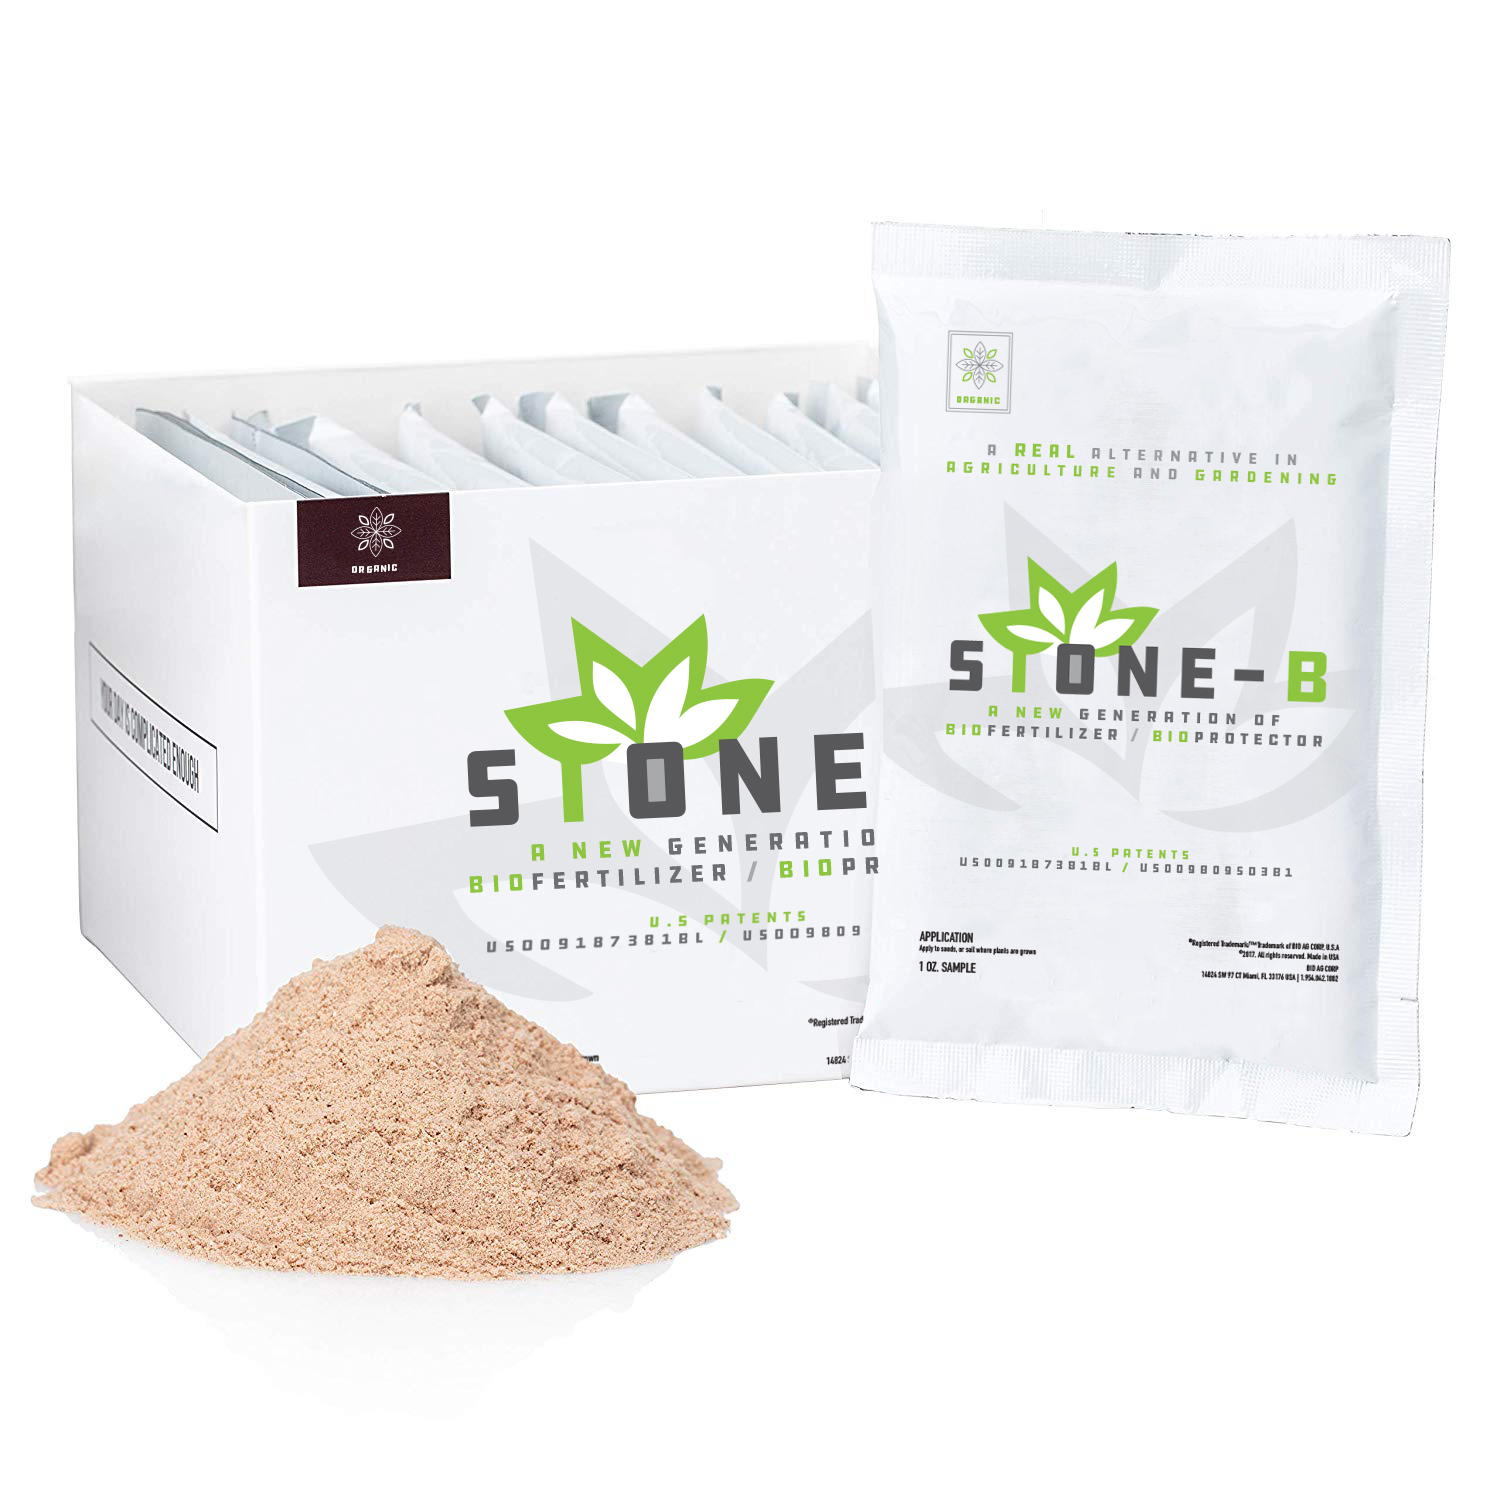 Download StoneB_BoxPacket_MockUp - Stone B Soil Treatment